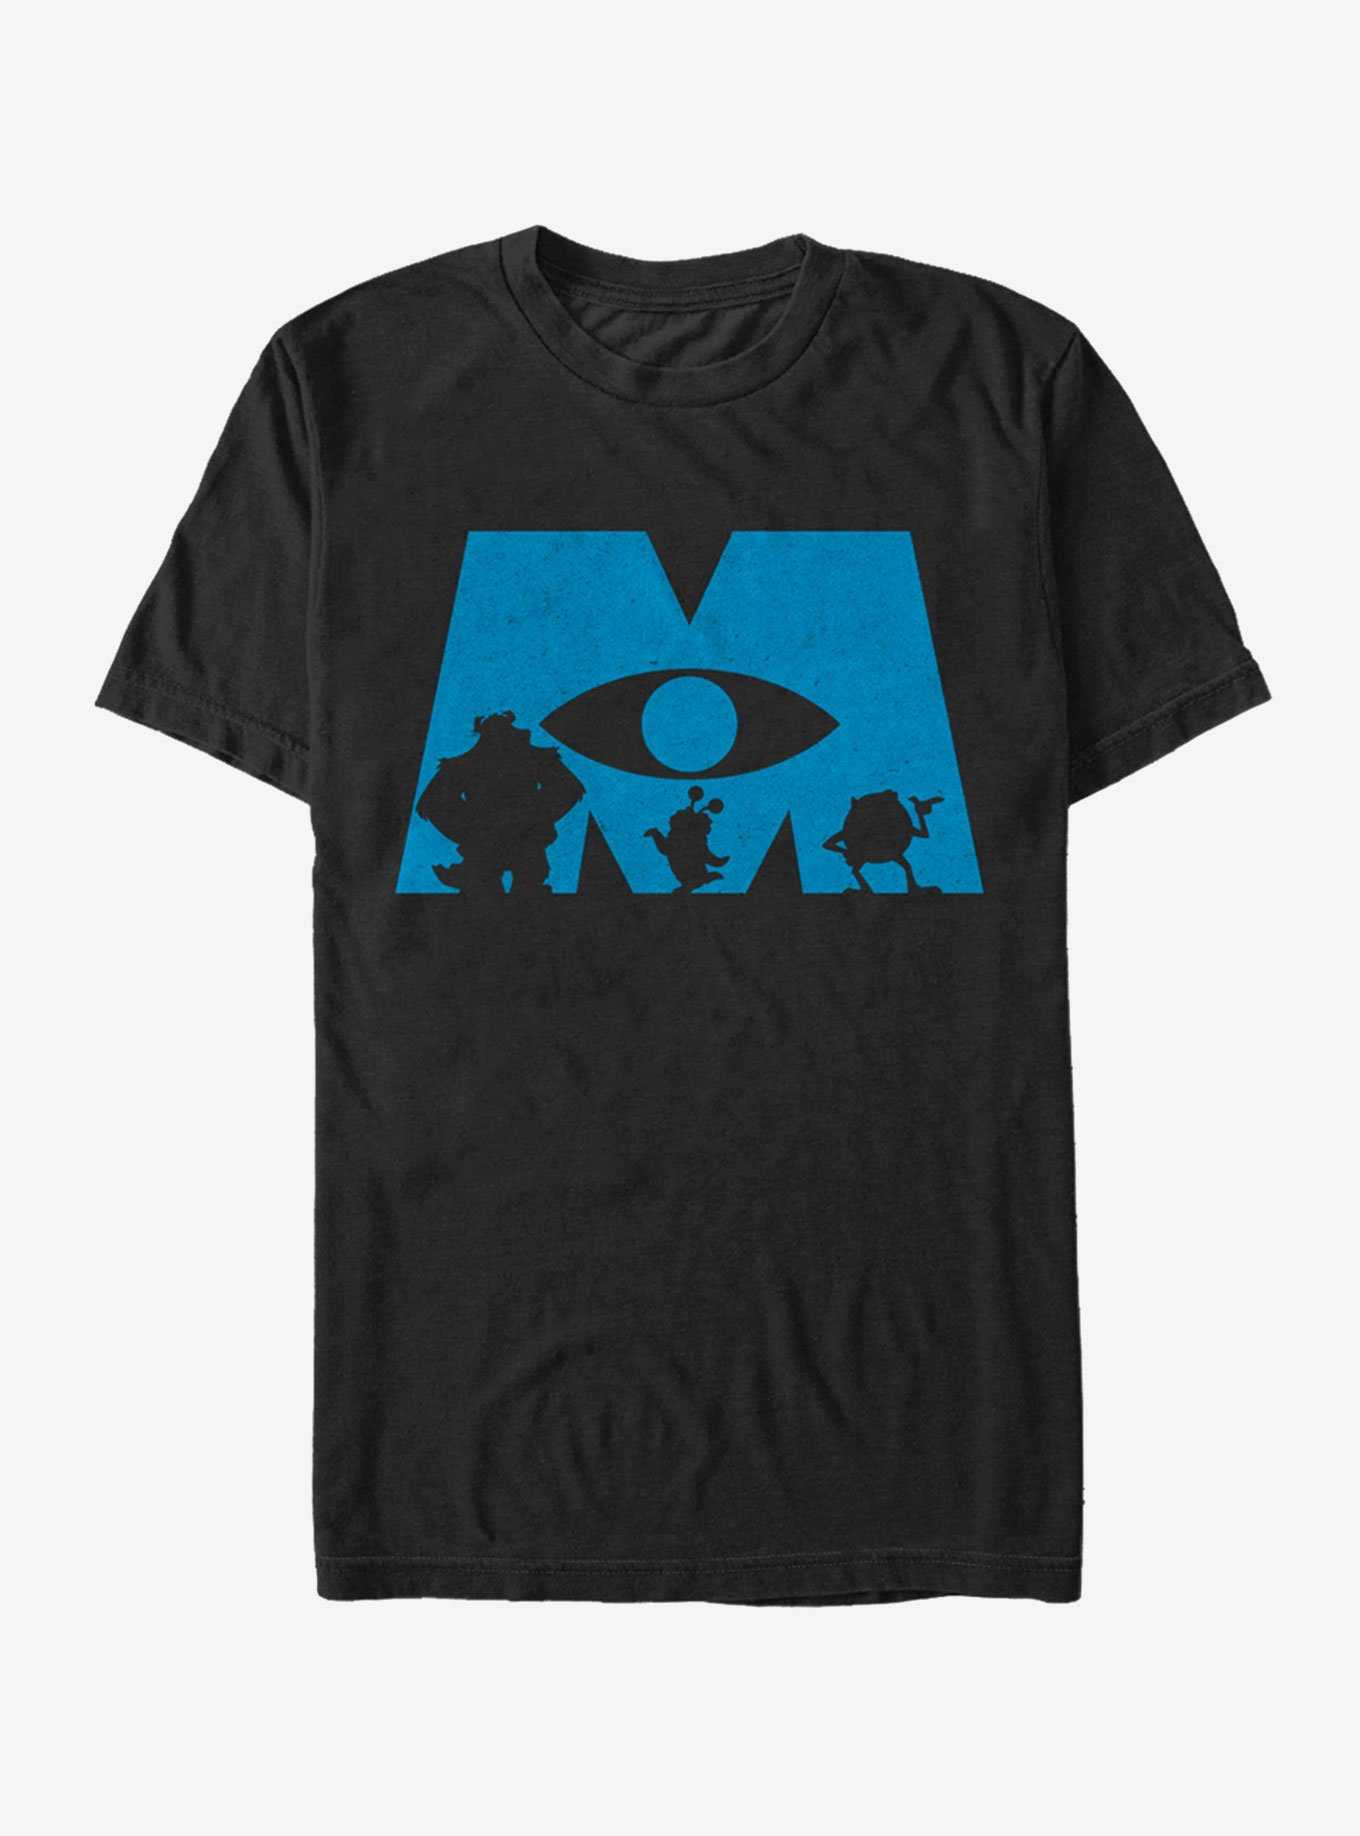 Disney Pixar Monsters, Inc. Logo Silhouette T-Shirt, , hi-res